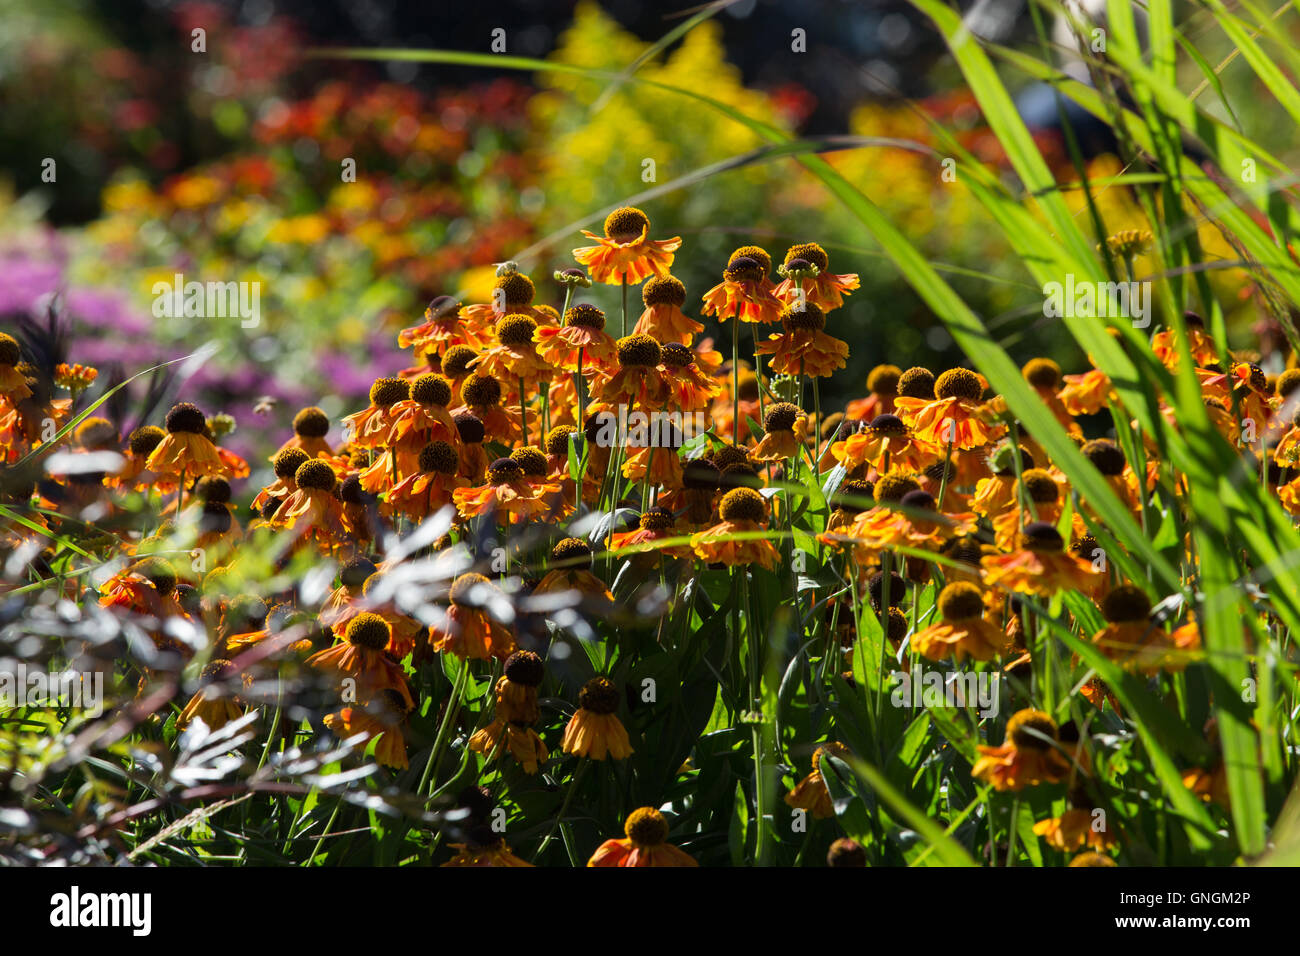 Les fleurs joyeuses de Helenium apportent des couleurs vives à un jardin à la fin de l'été et à l'automne Banque D'Images